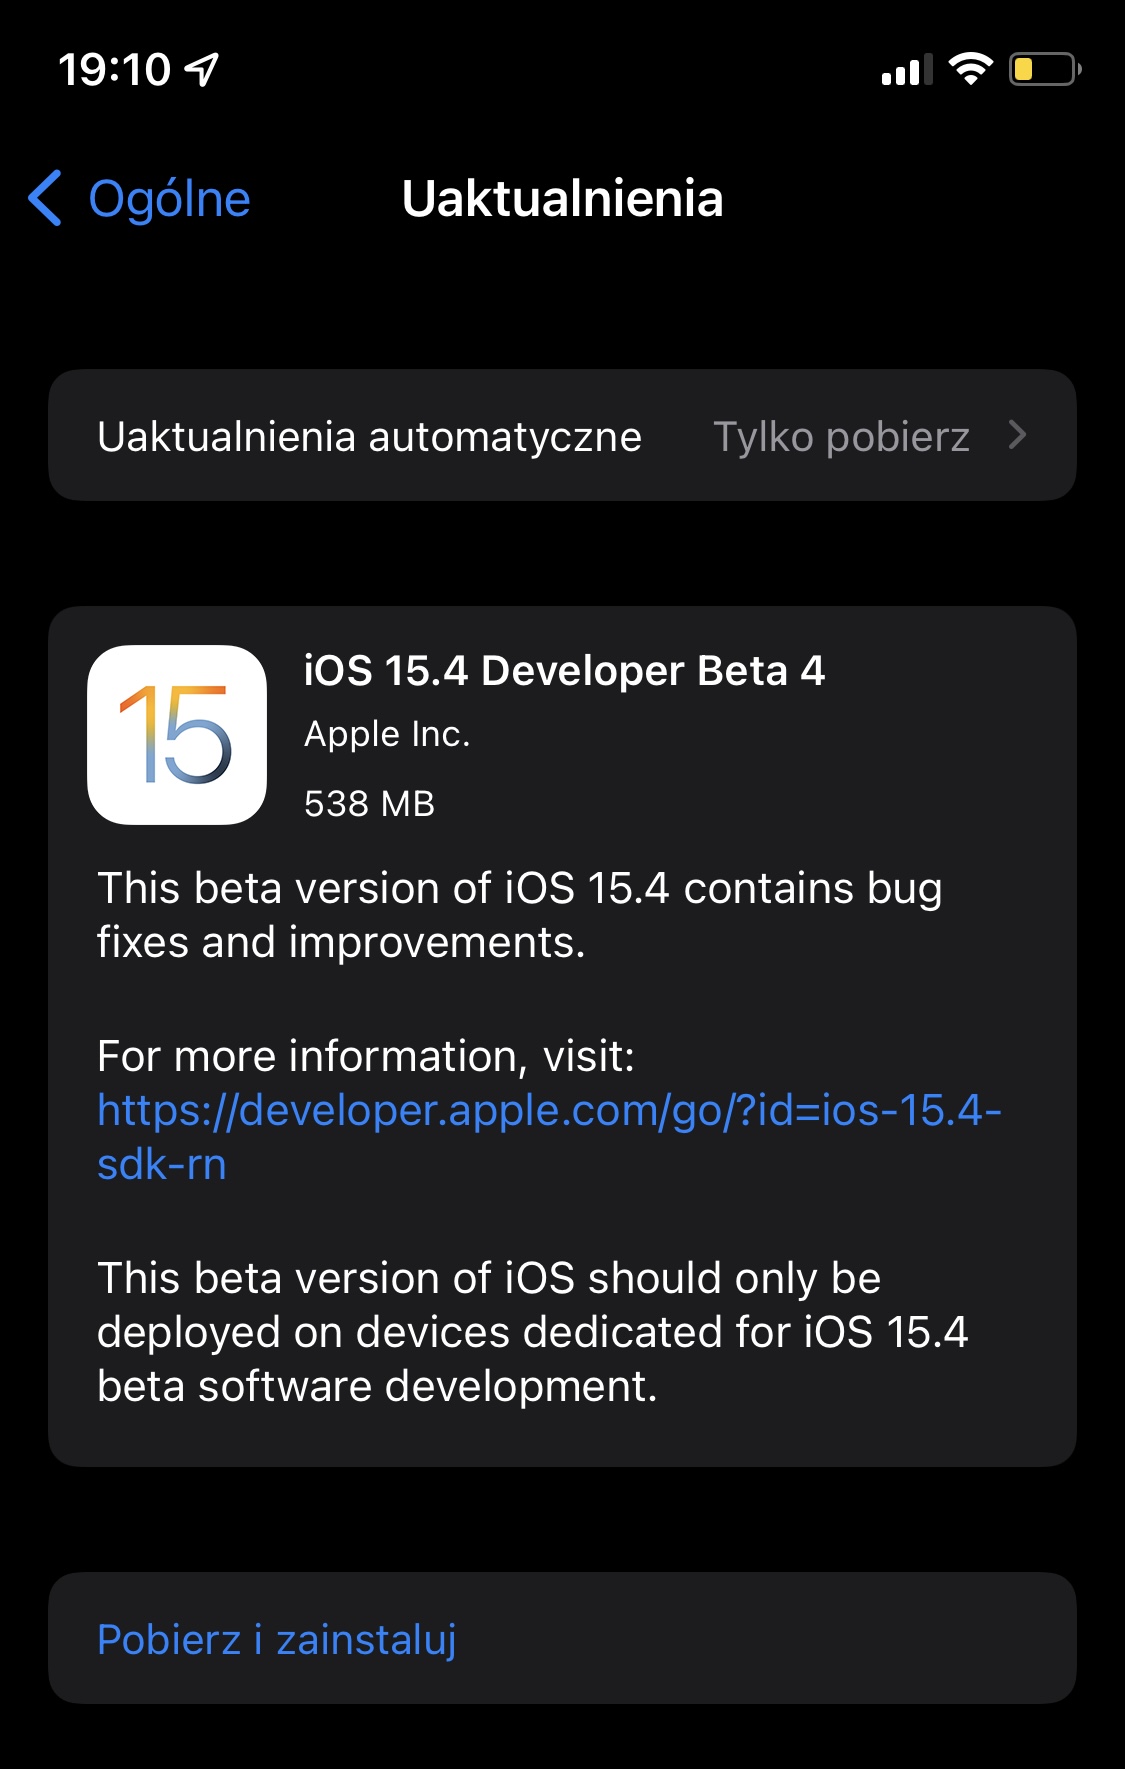 aktualizacja iOS 15.4 beta 4 macOS 12.3 watchOS 8.5 iPadOS 15.4